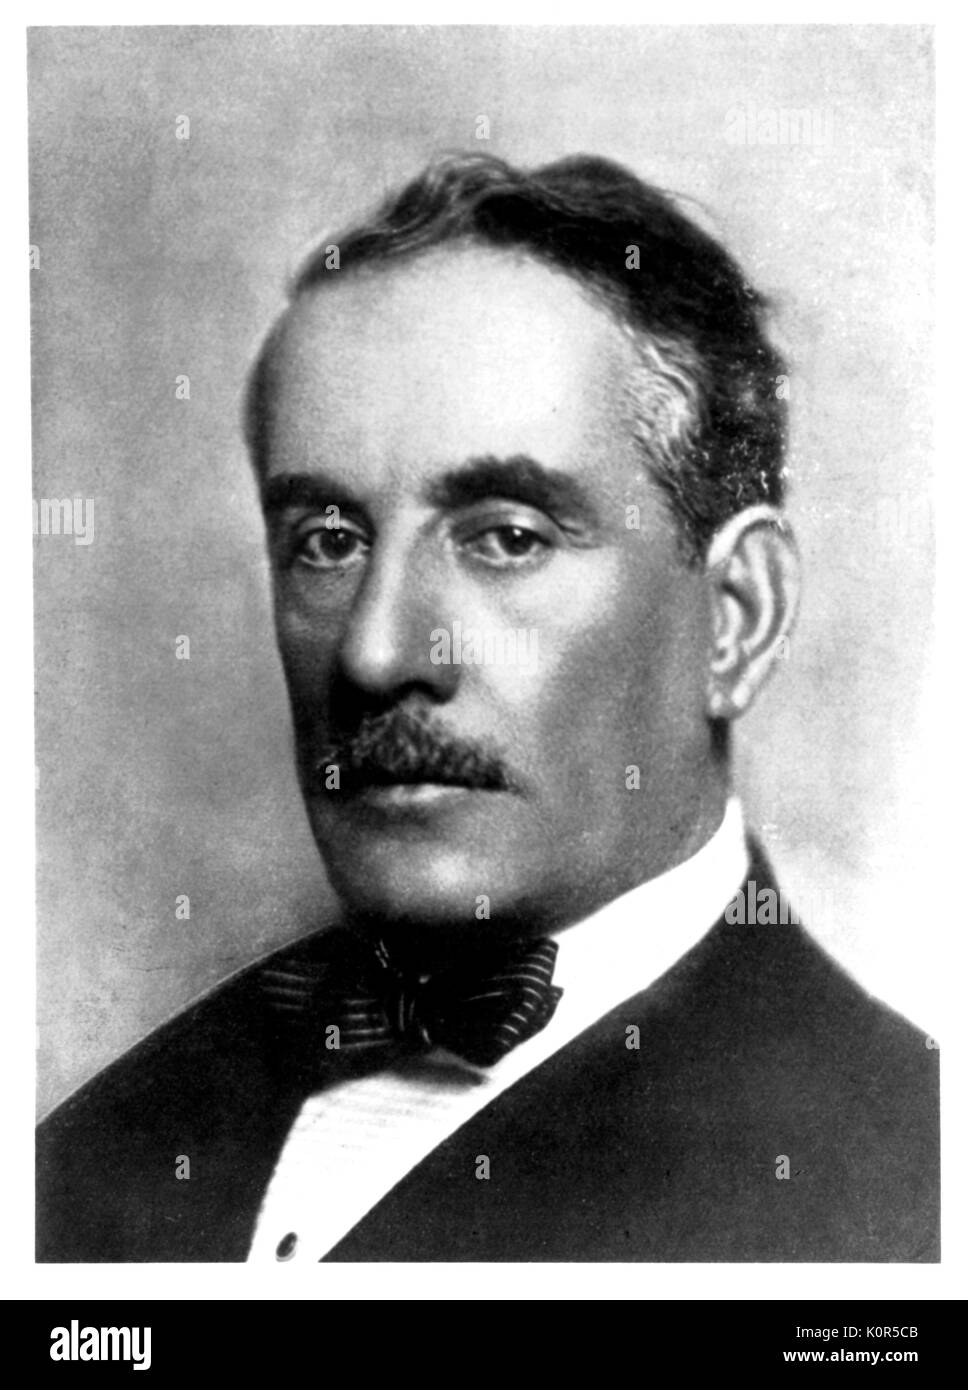 Giacomo Puccini - Italian composer: 22 December 1858 - 29 November 1924. Stock Photo